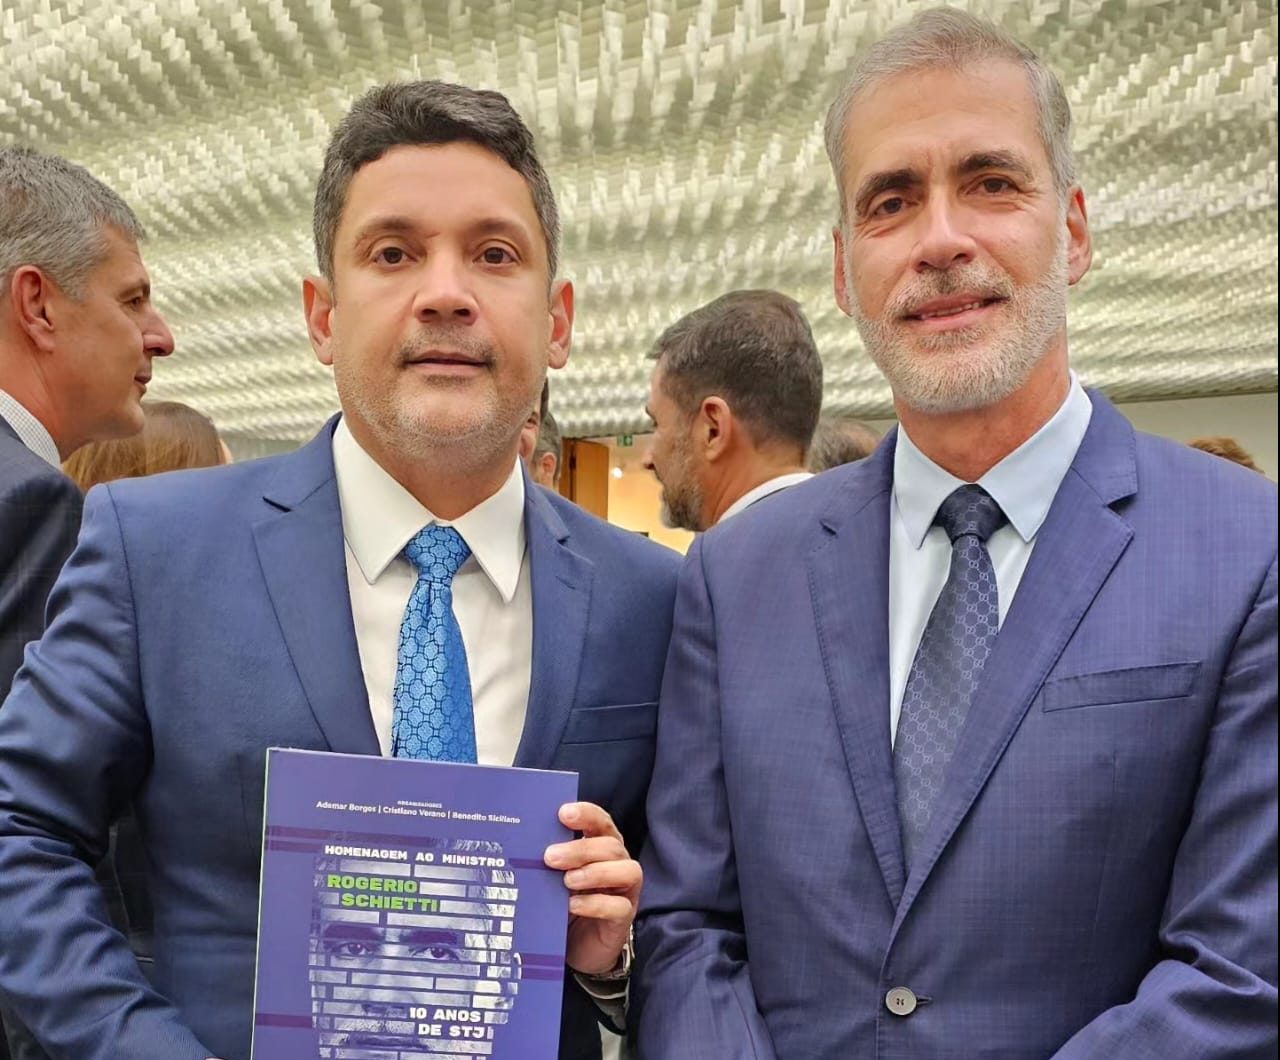 Bruno Queiroz participa de lançamento do livro em homenagem aos 10 anos de atuação do ministro Rogério Schietti no STJ